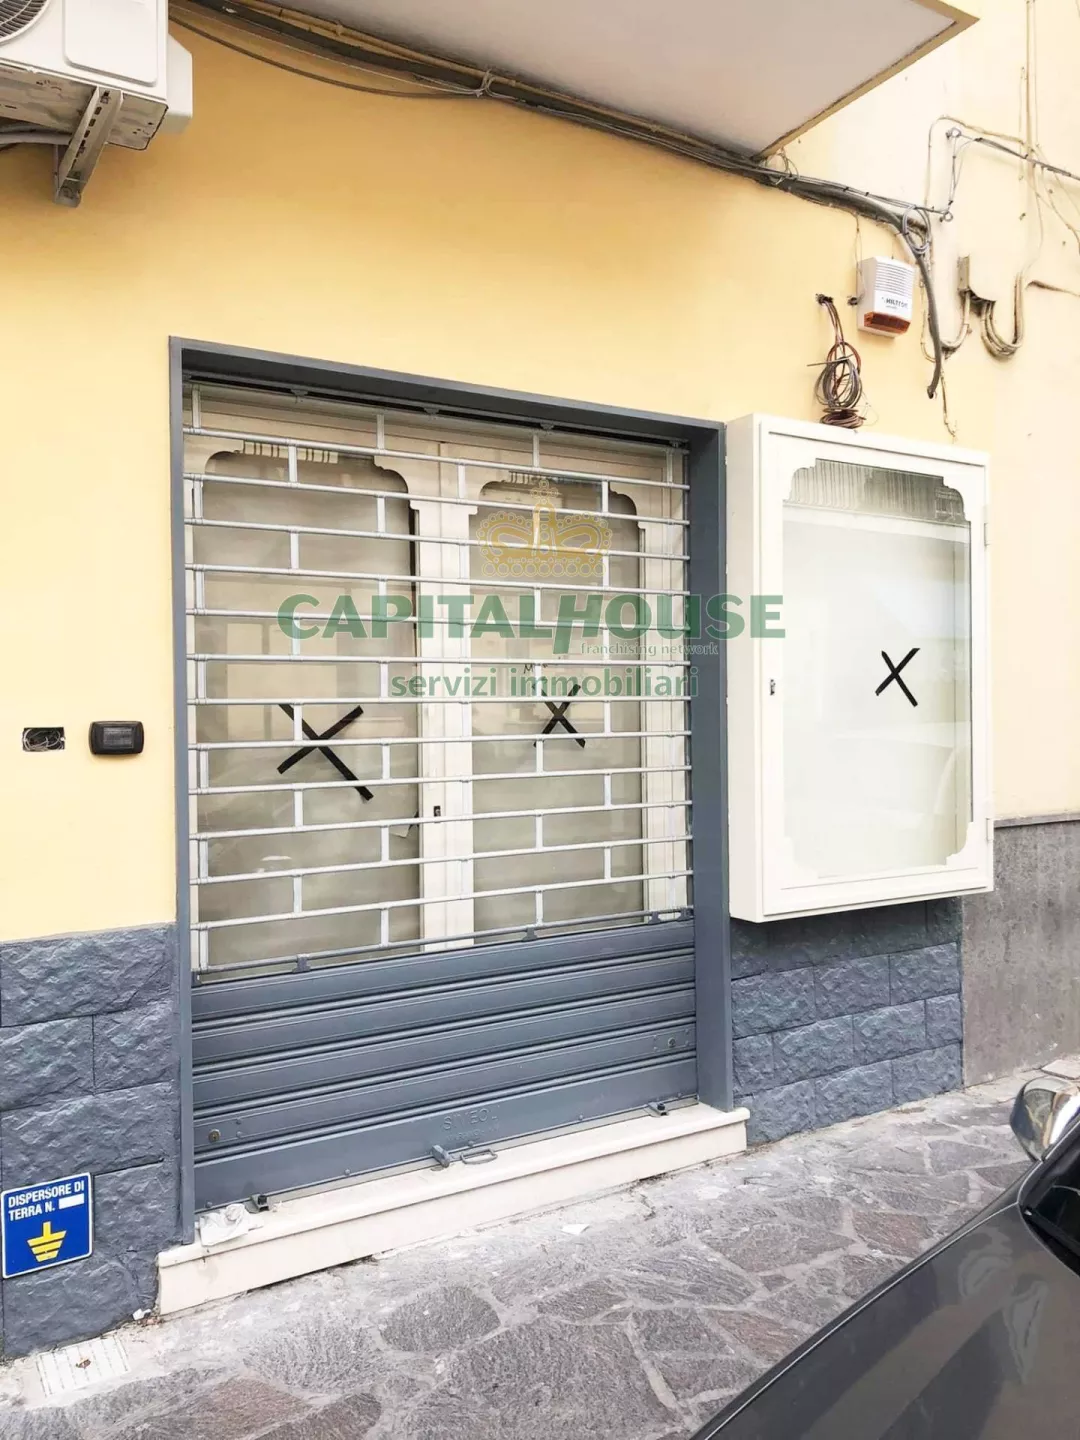 Immagine per Locale Commerciale in vendita a Marano di Napoli piazza trieste e trento